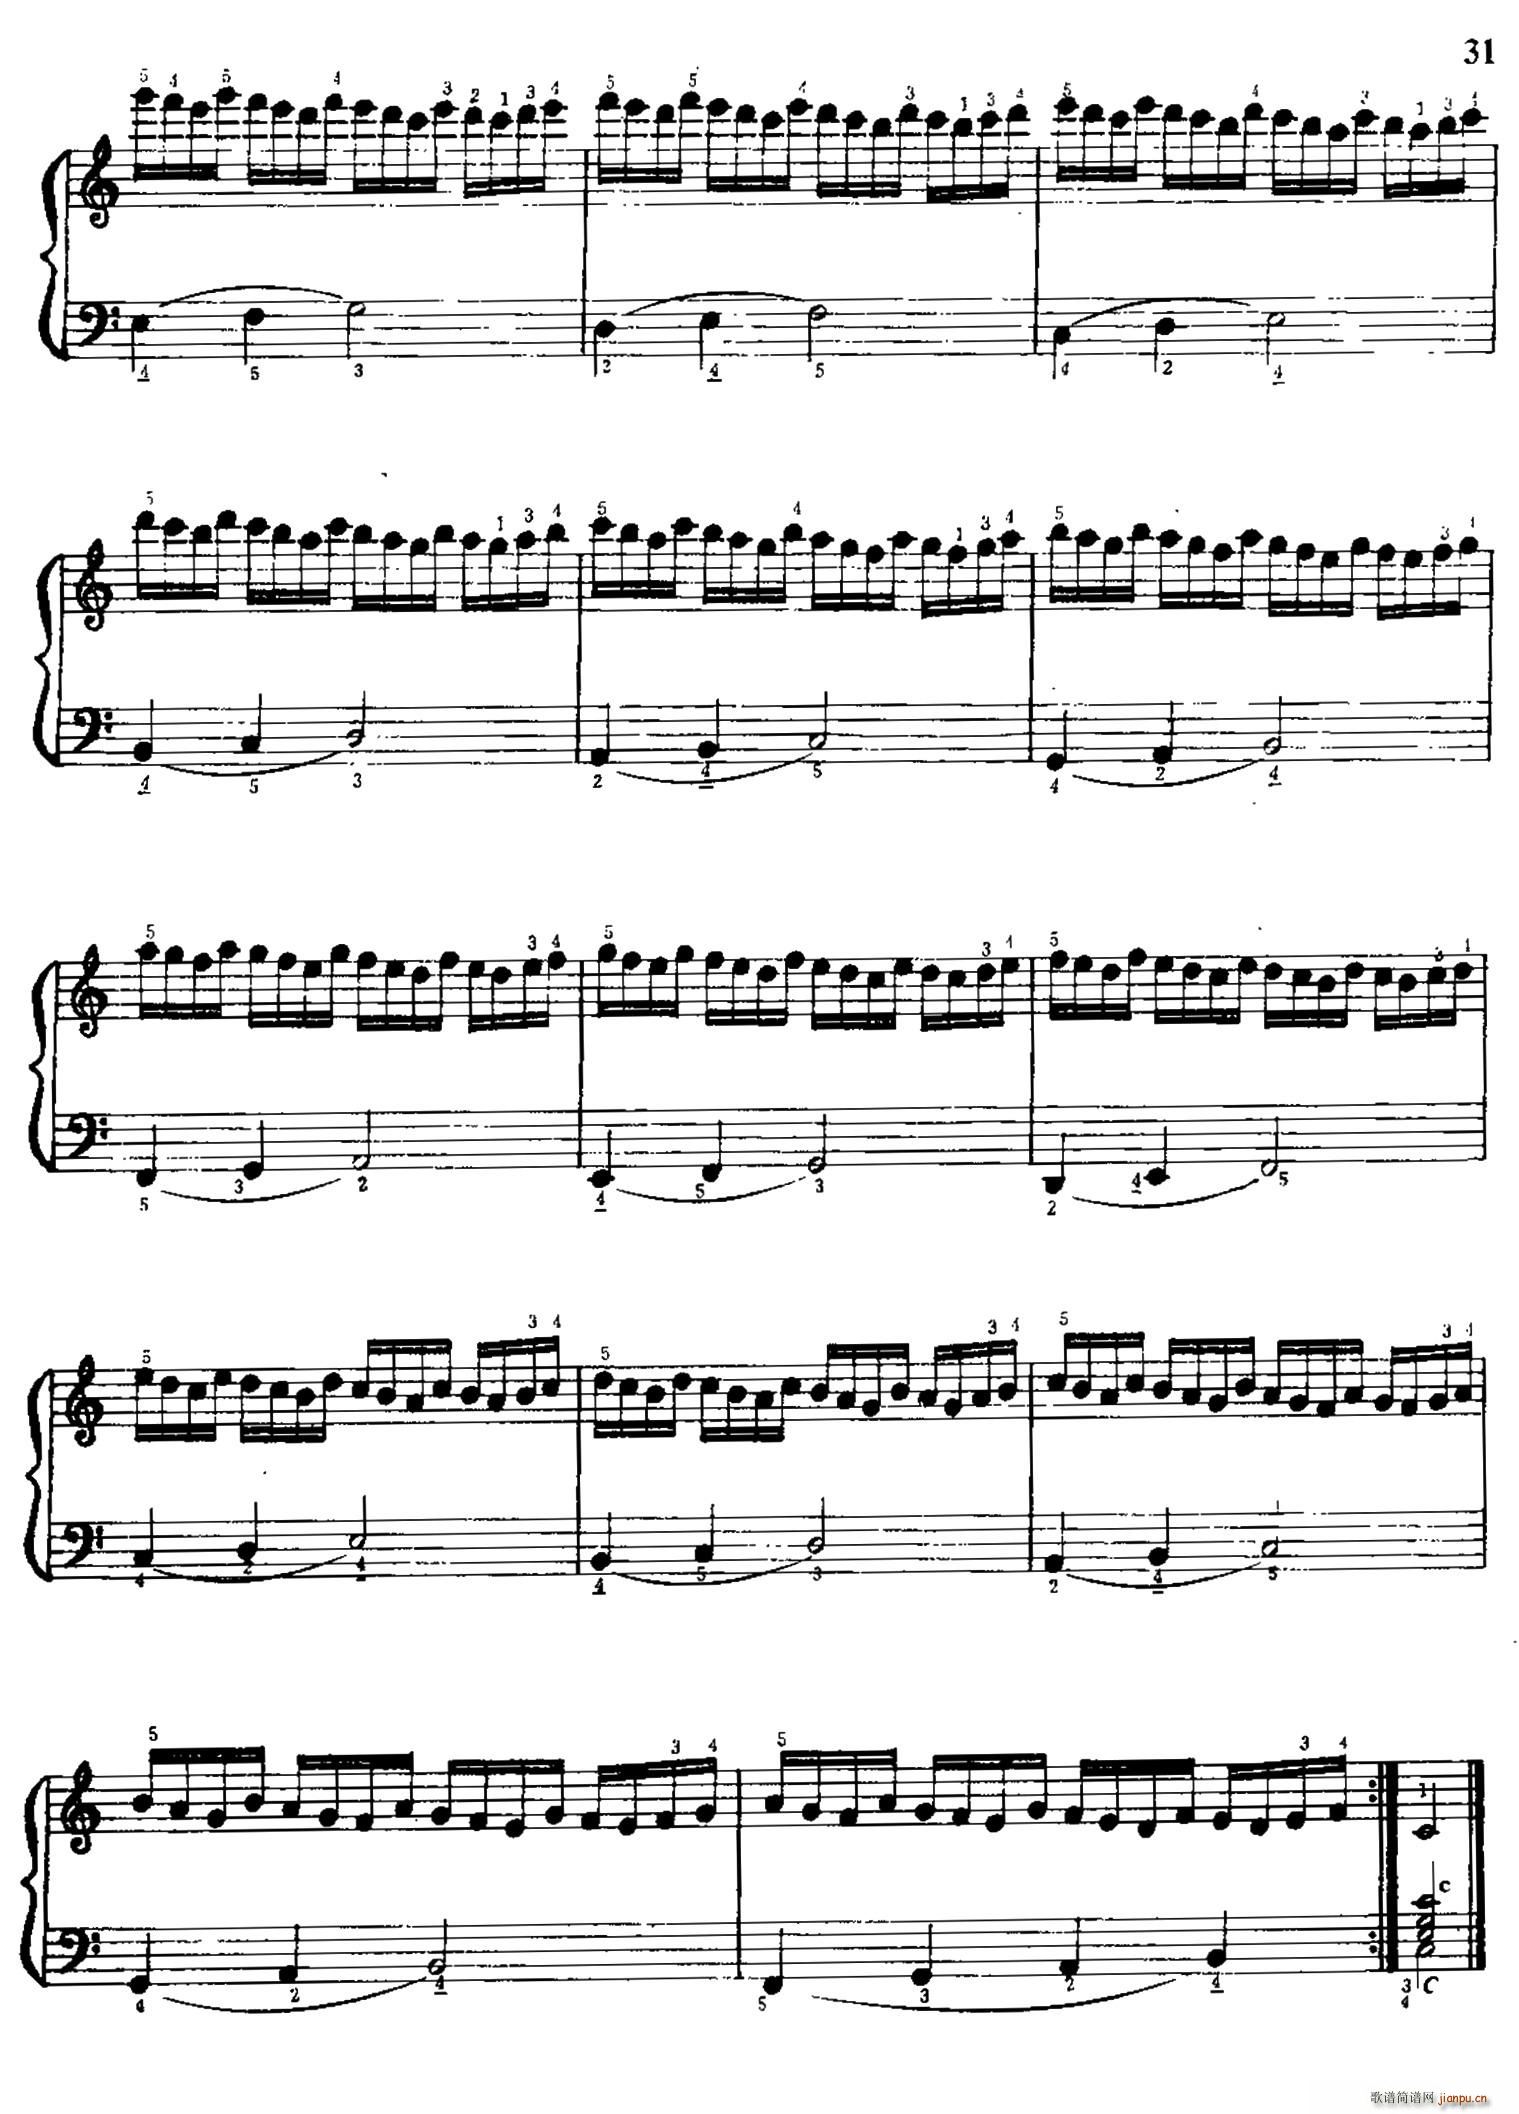 手风琴手指练习 第一部分 21 30(手风琴谱)10